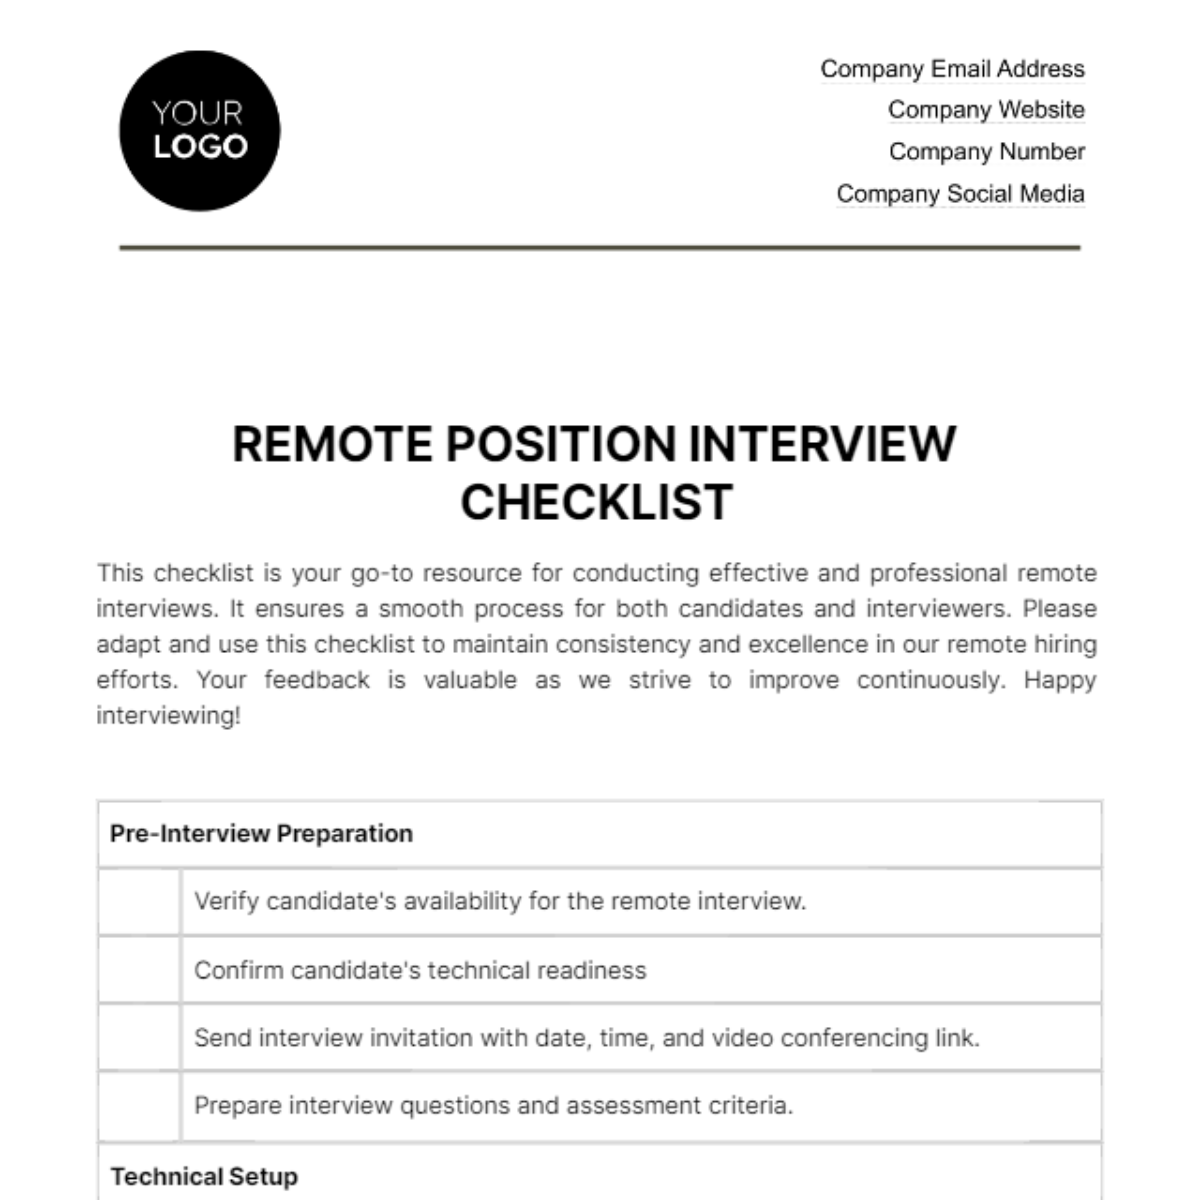 Remote Position Interview Checklist HR Template